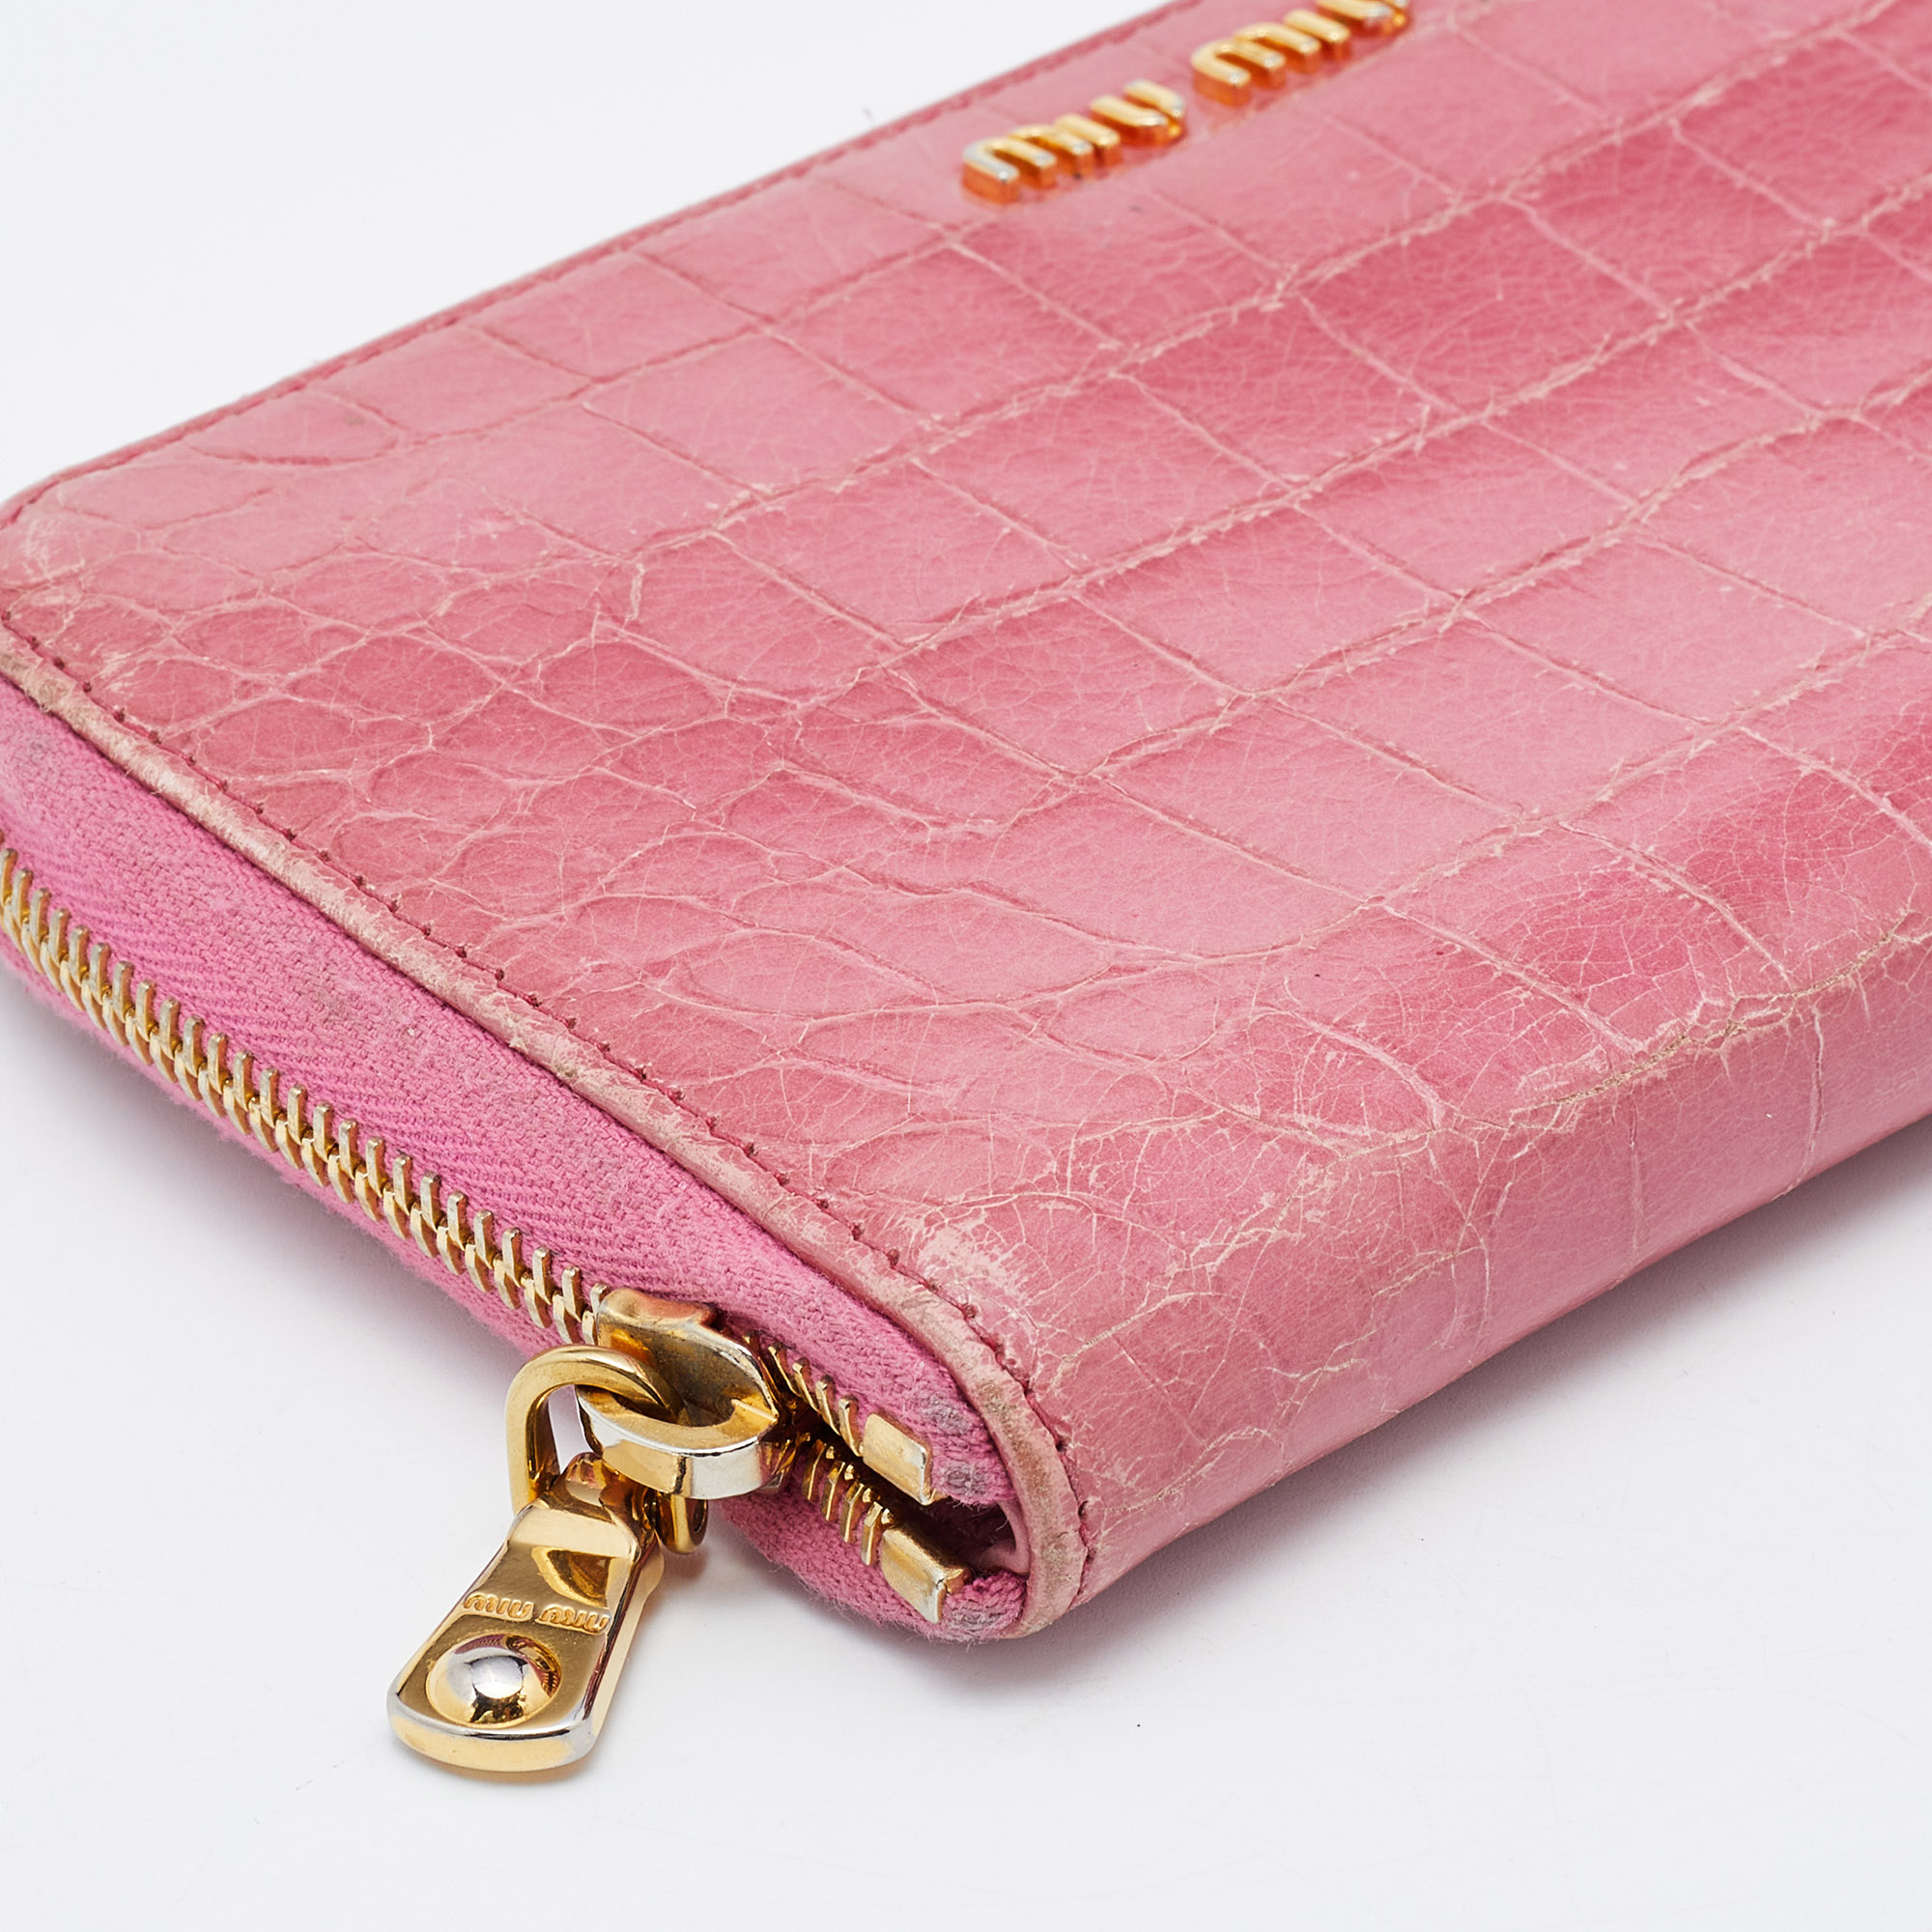 Miu Miu Pink Croc Embossed Leather Zip Around Wallet